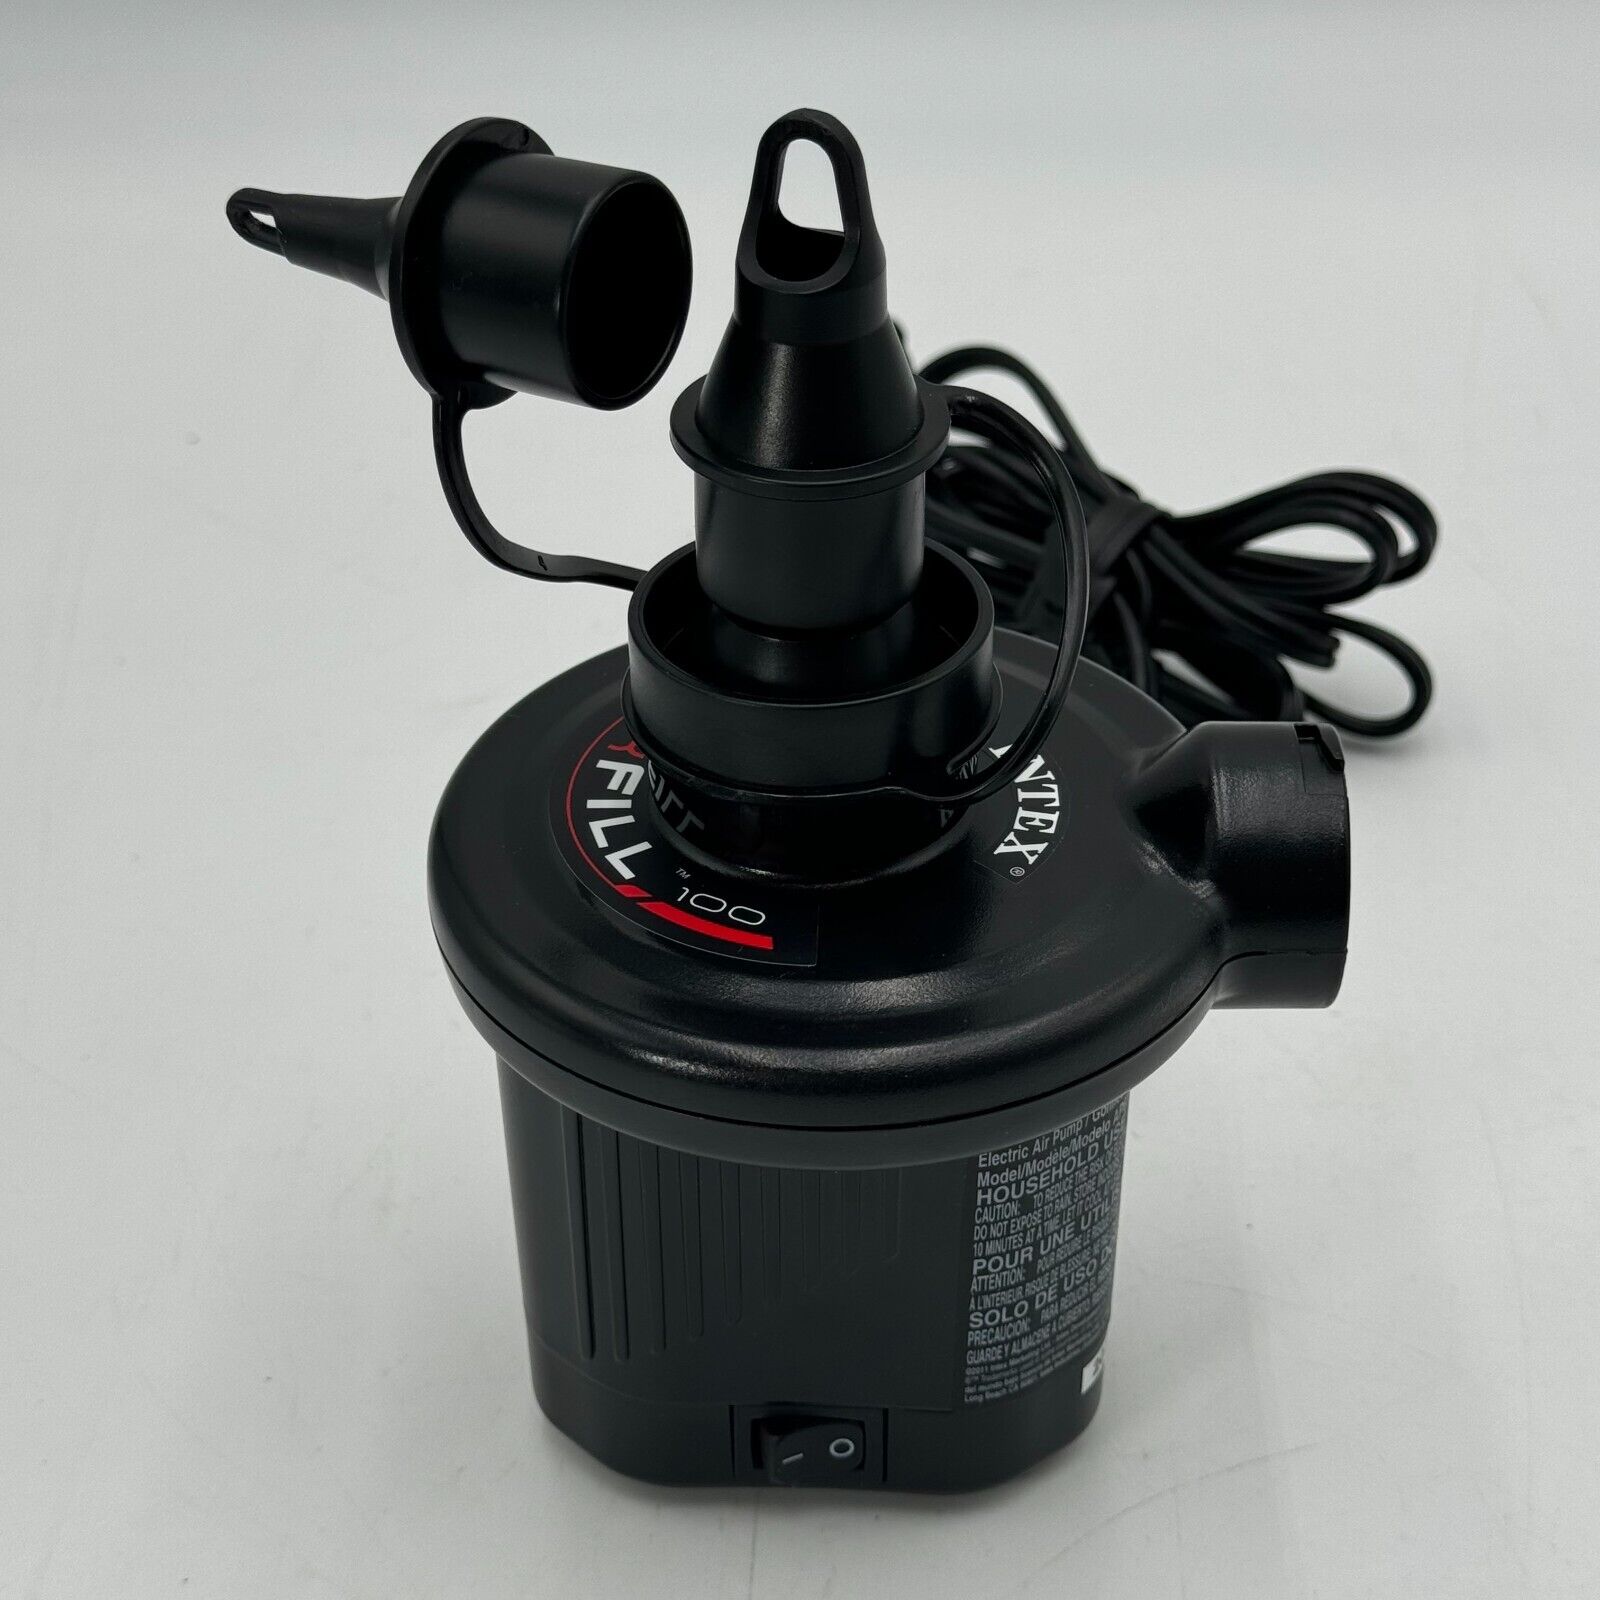 NEW Intex Quick-Fill Electric Pump #66619 110-120V AC Indoor 3 Assorted Nozzles